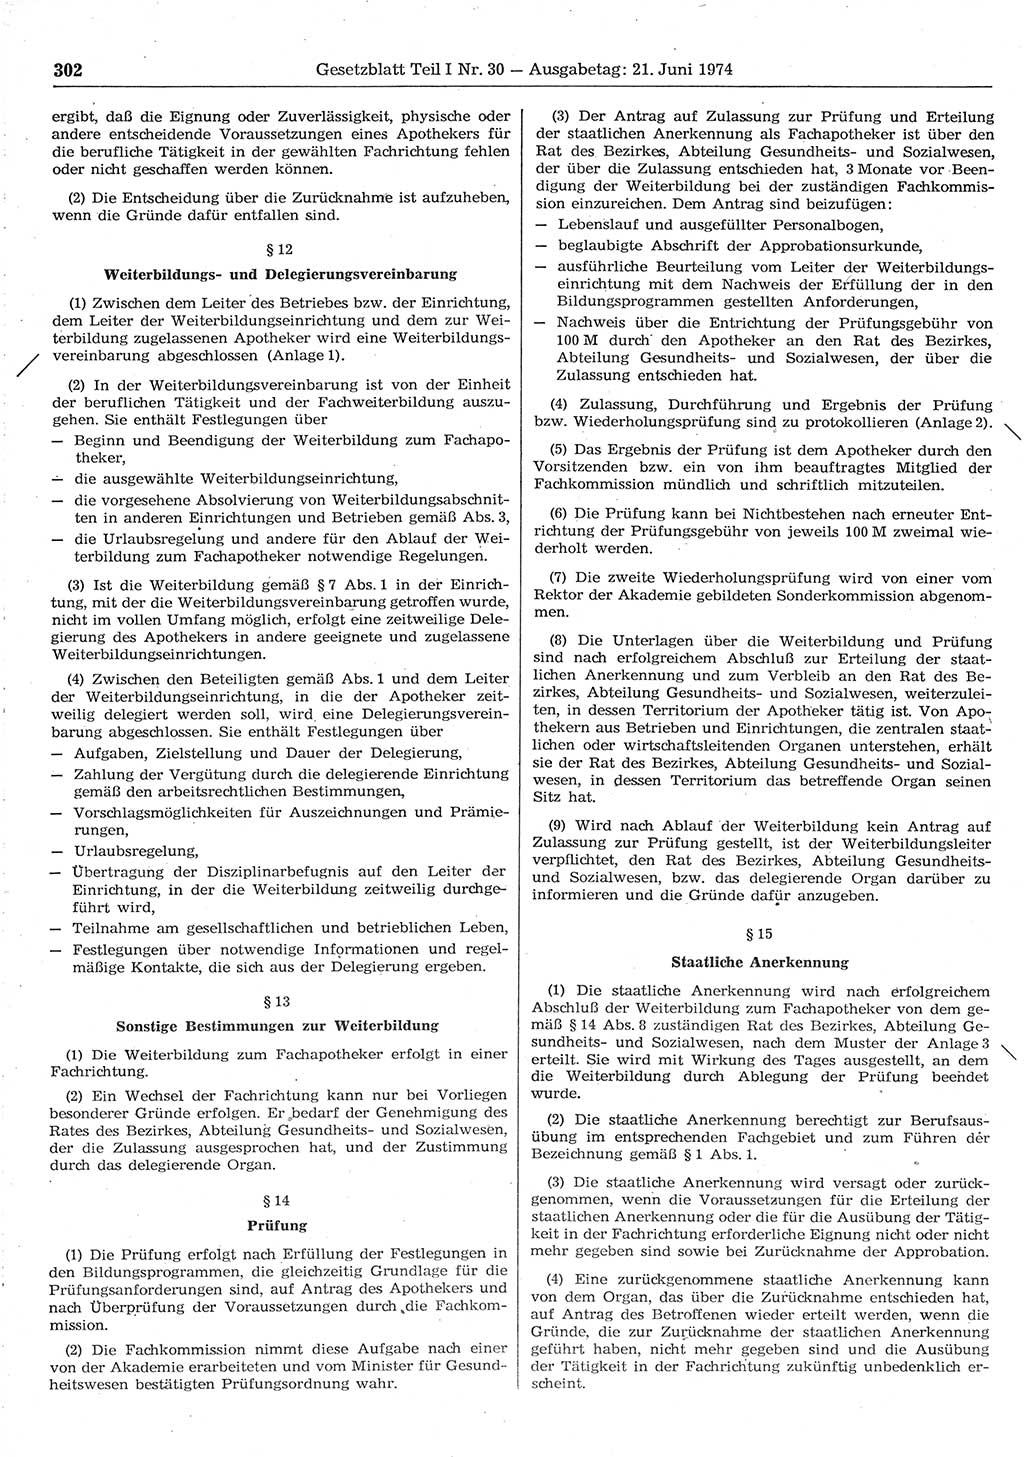 Gesetzblatt (GBl.) der Deutschen Demokratischen Republik (DDR) Teil Ⅰ 1974, Seite 302 (GBl. DDR Ⅰ 1974, S. 302)